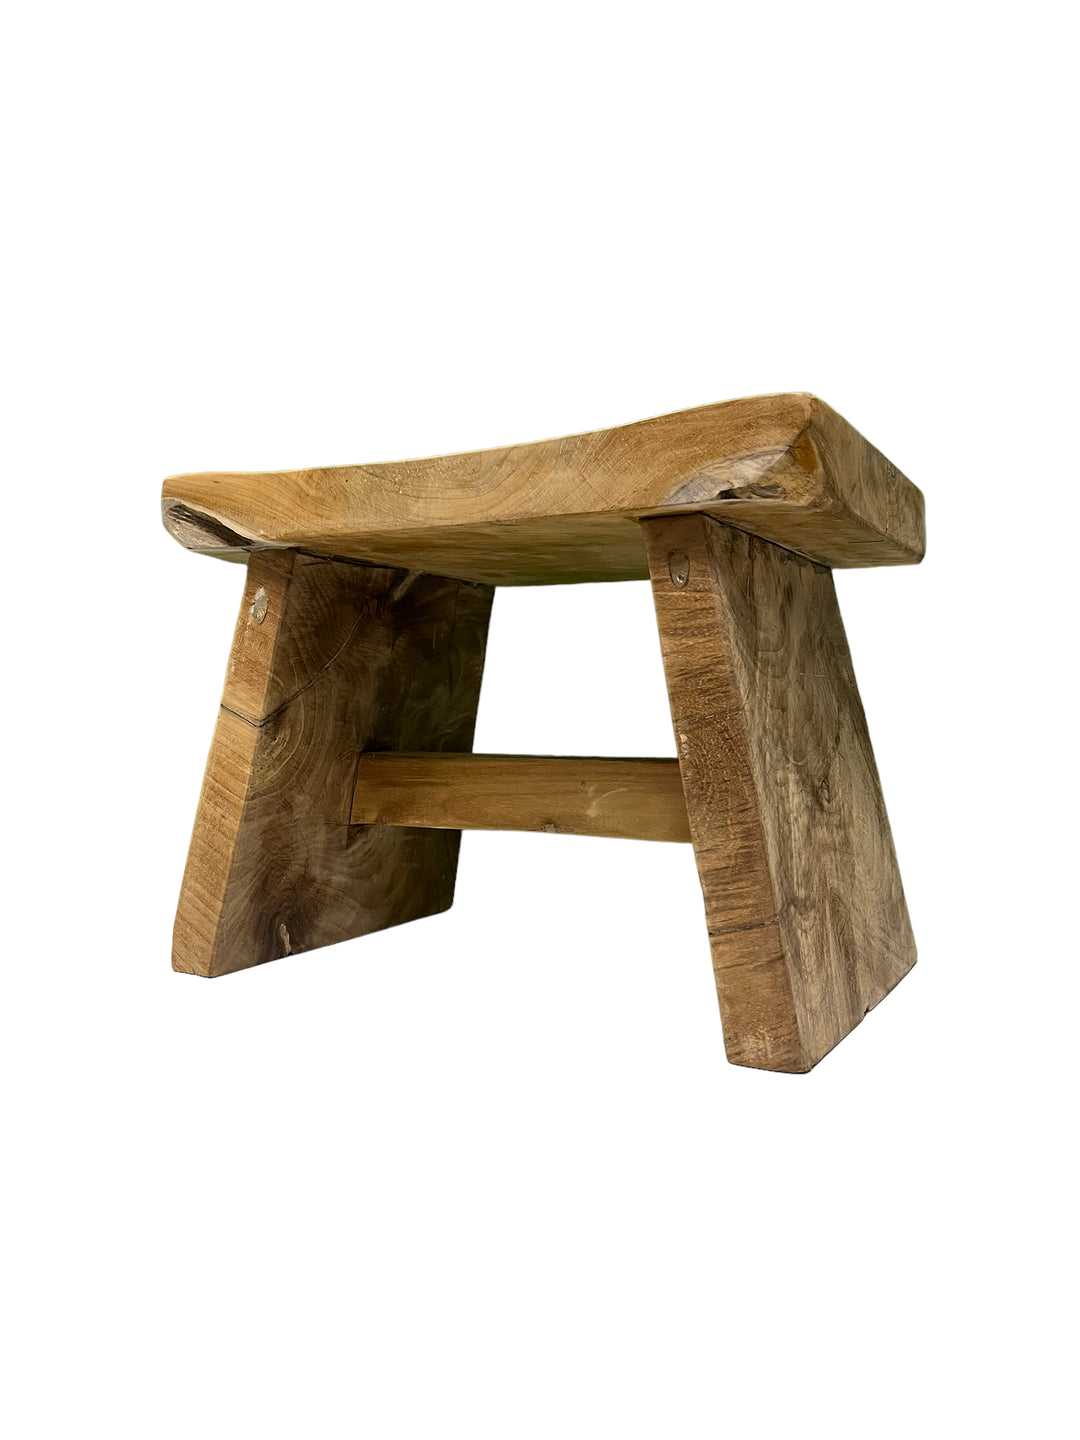 Japan low stool